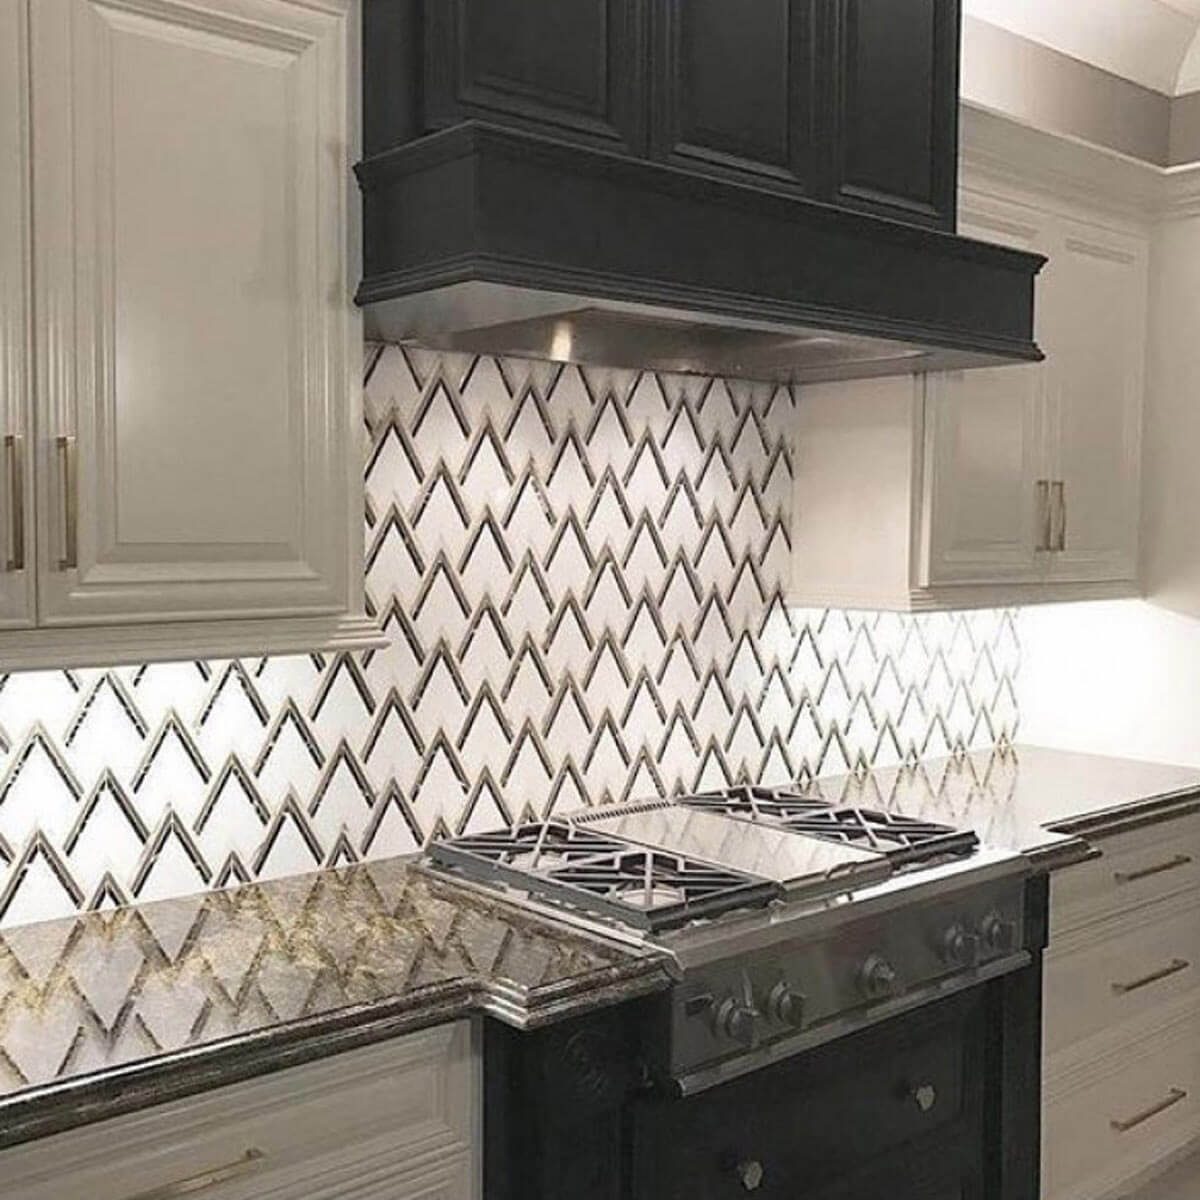  tile designs for kitchen